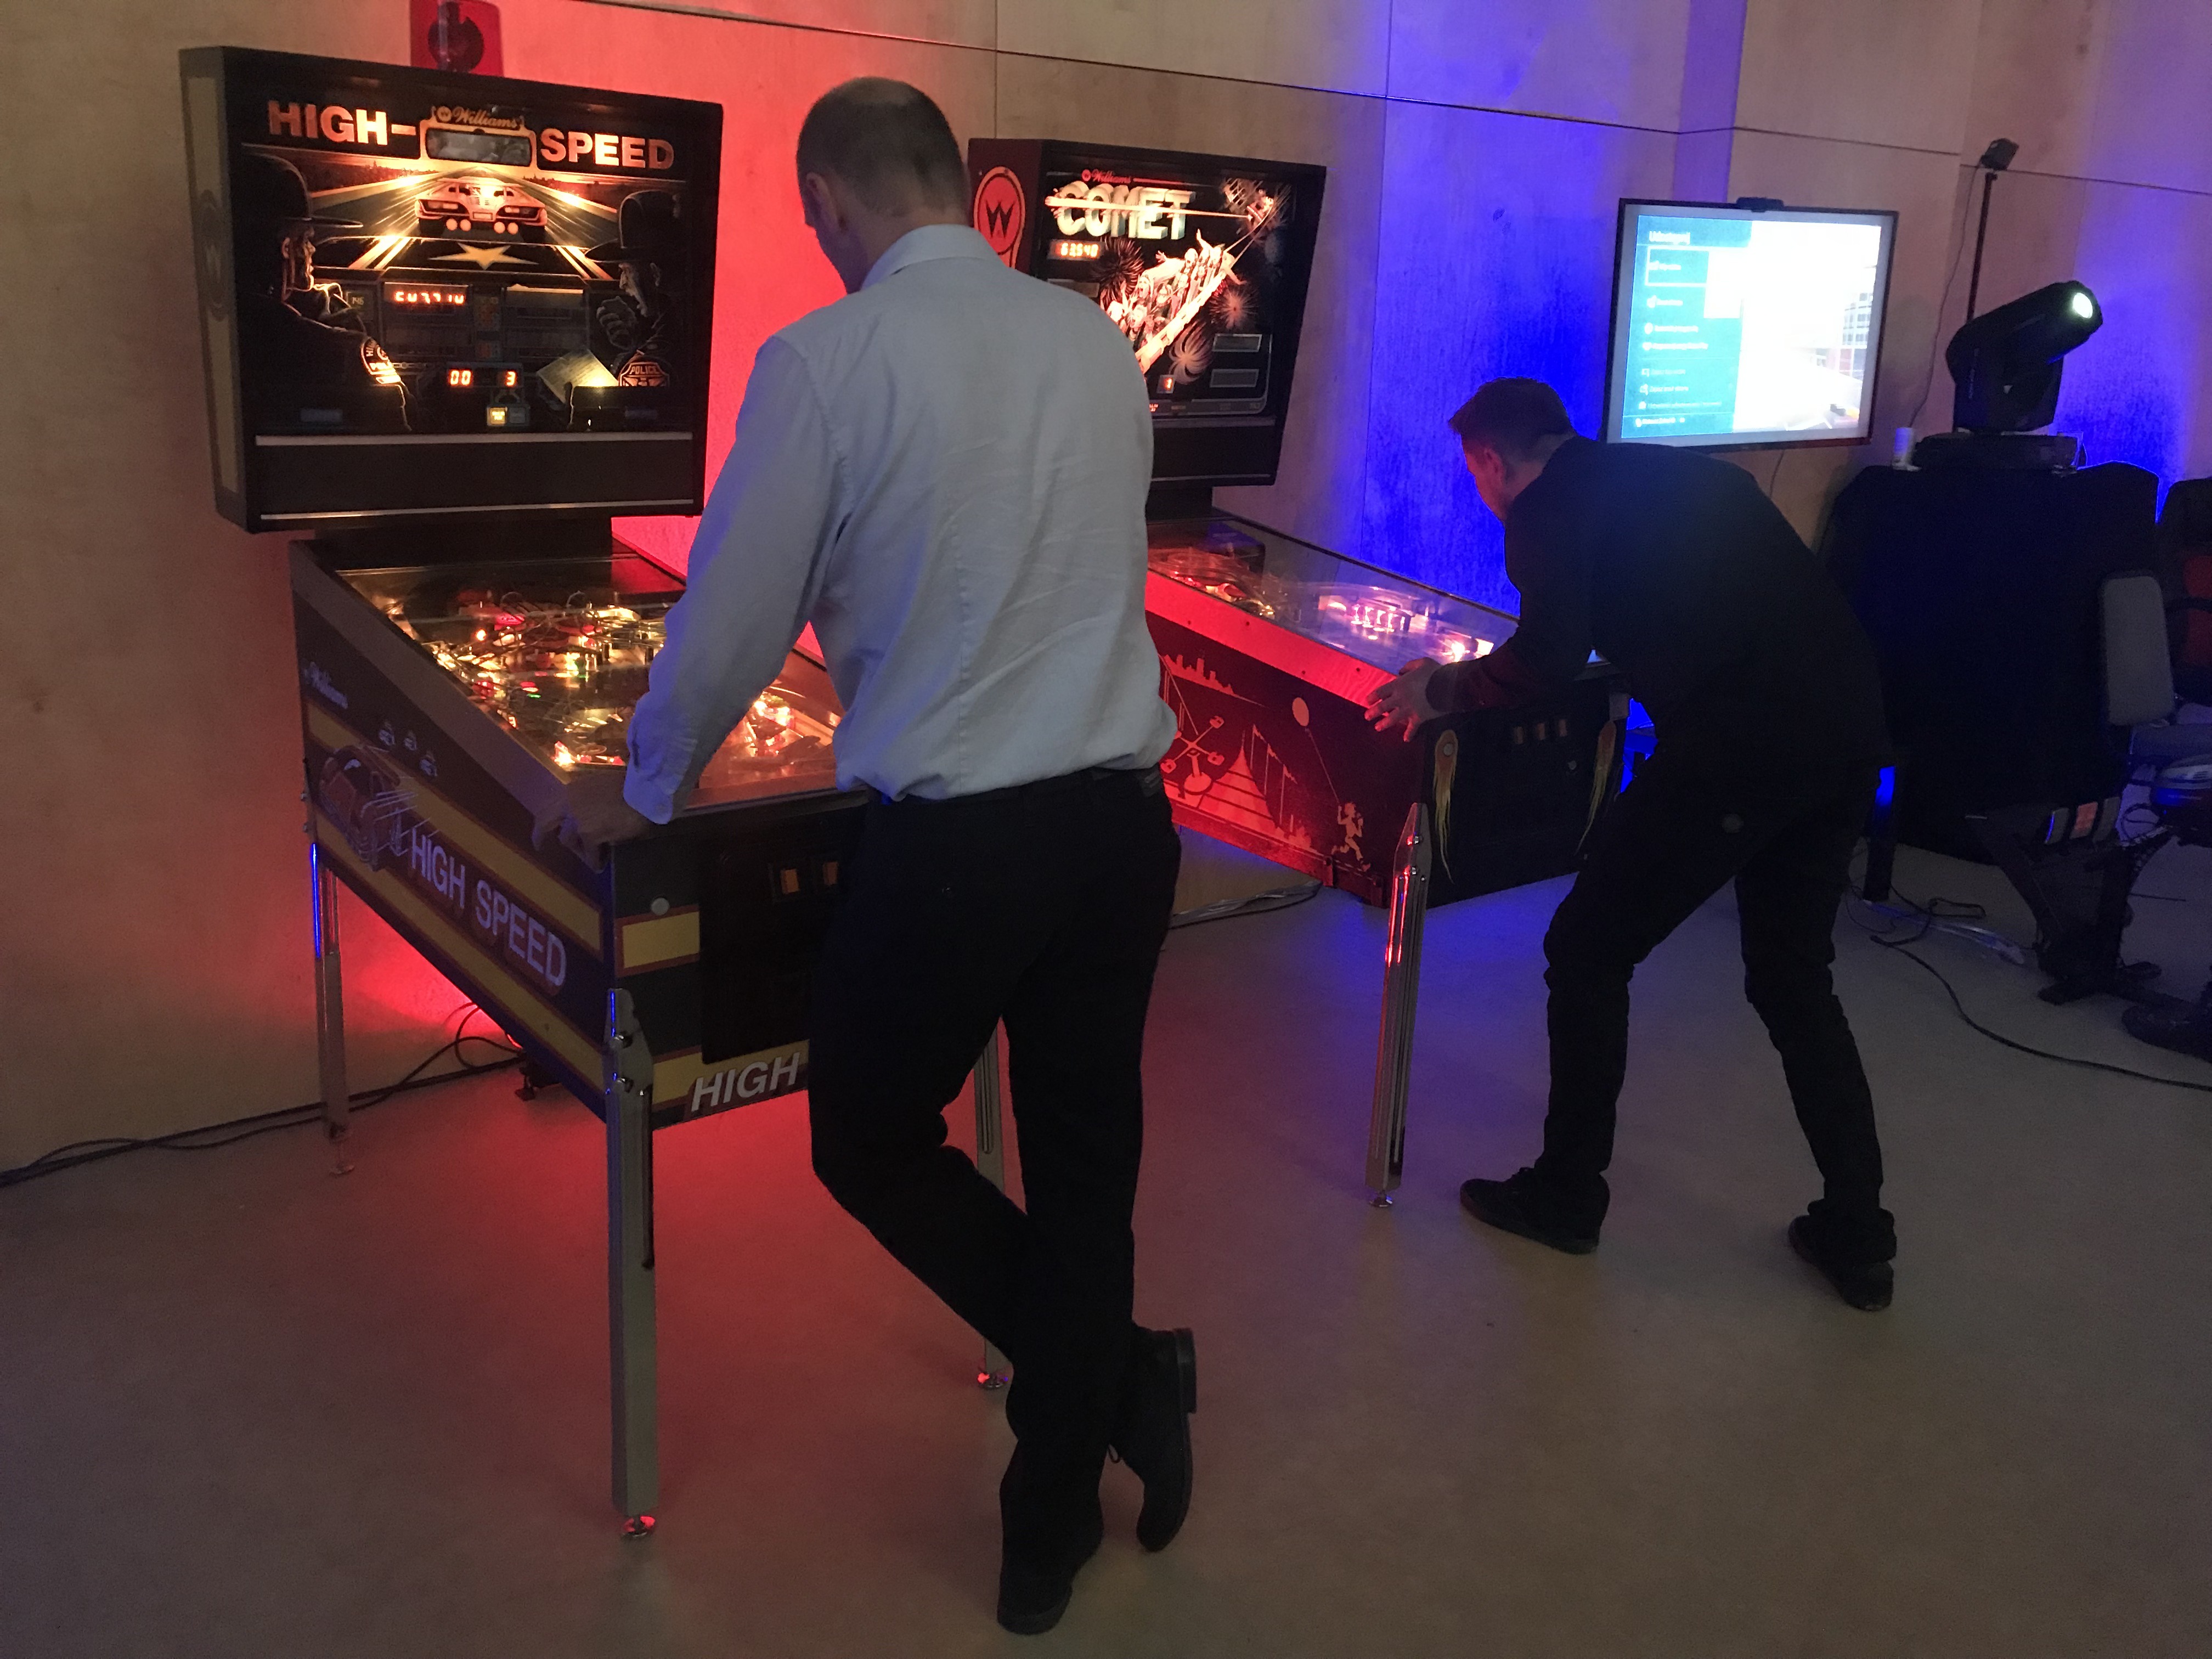 Atrakcje retro do wynajęcia – automaty arcade, pinball, flippery